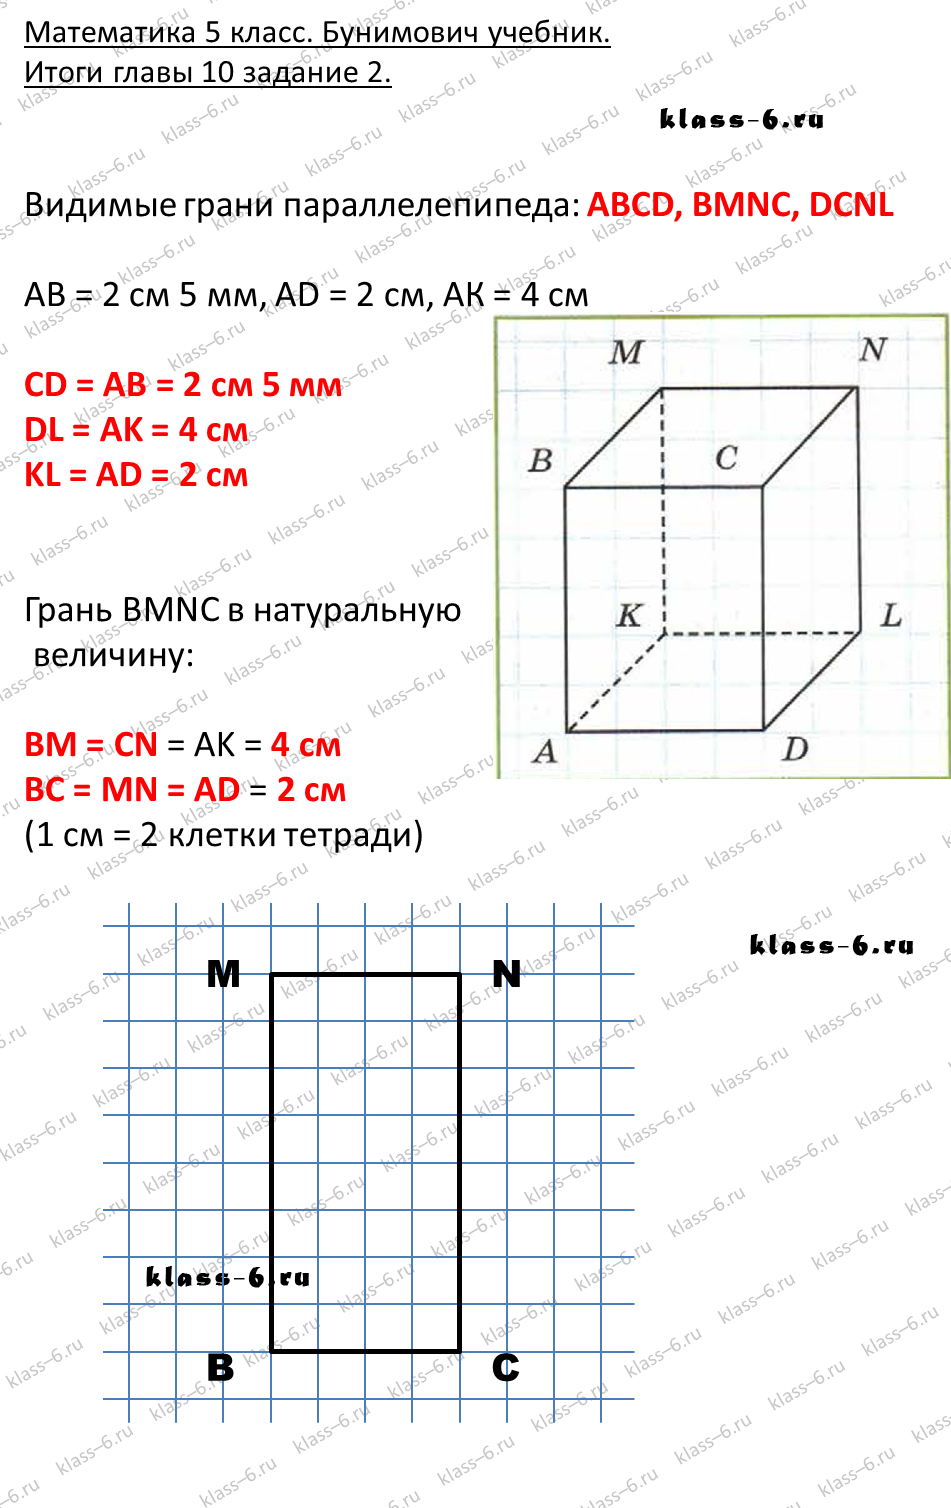 решебник и гдз по математике учебник Бунимович 5 класс итоги главы 10-2